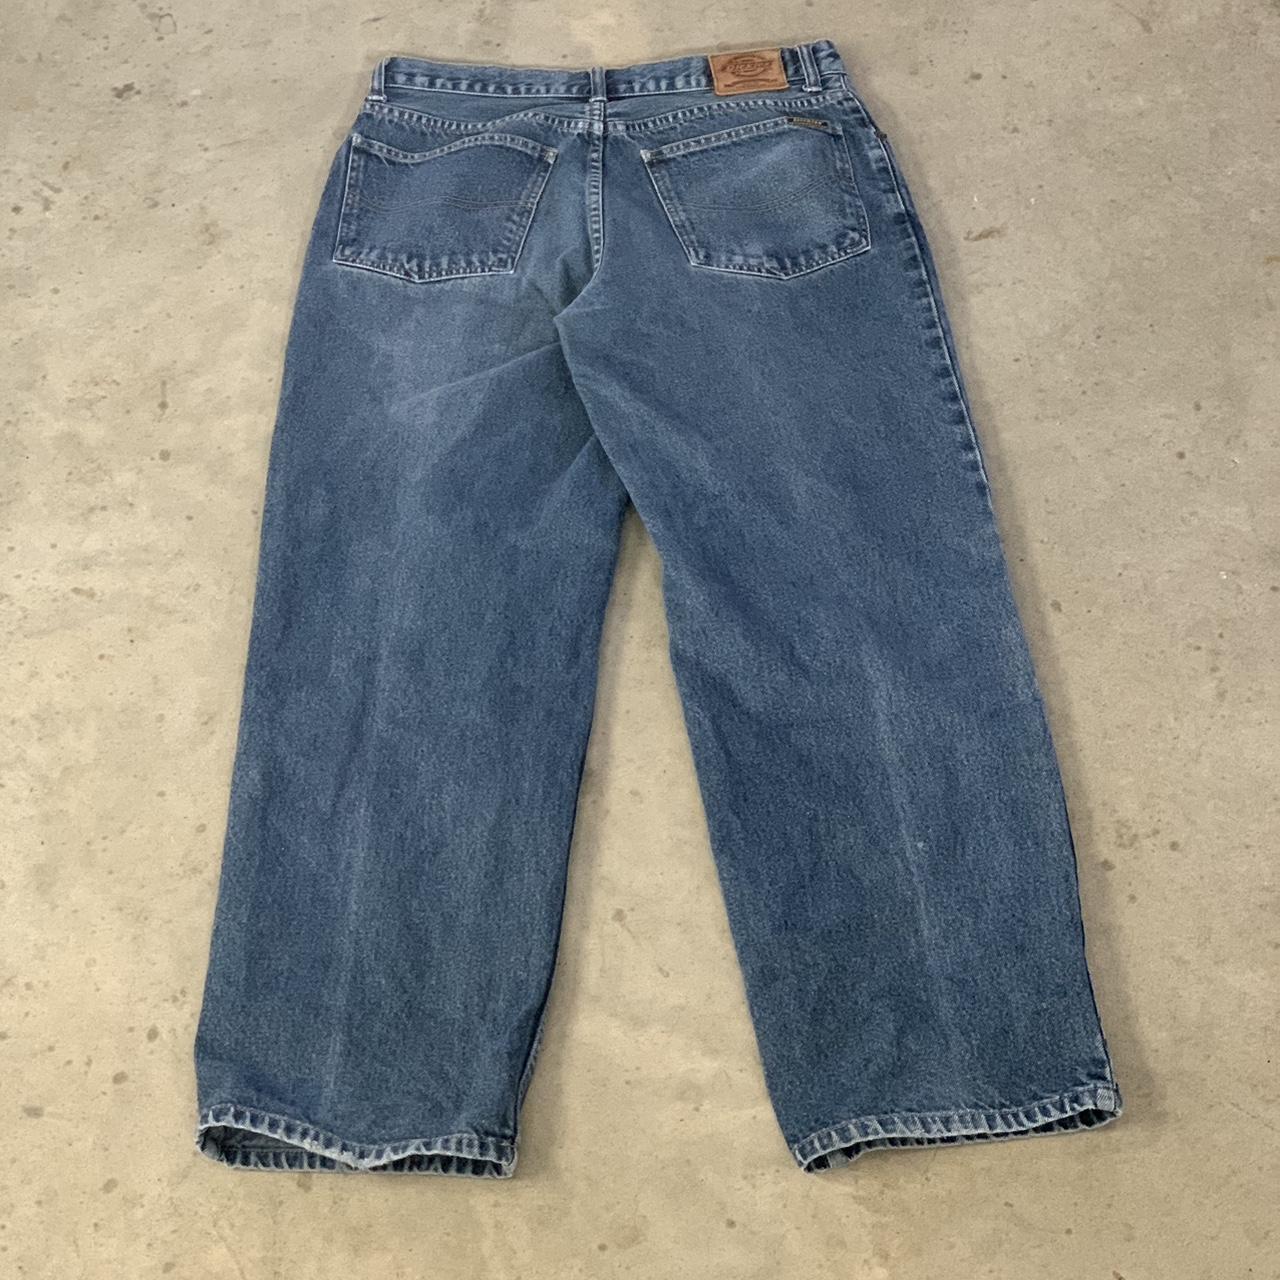 Vintage Dickies Jeans 34 x 32 No flaws - Depop